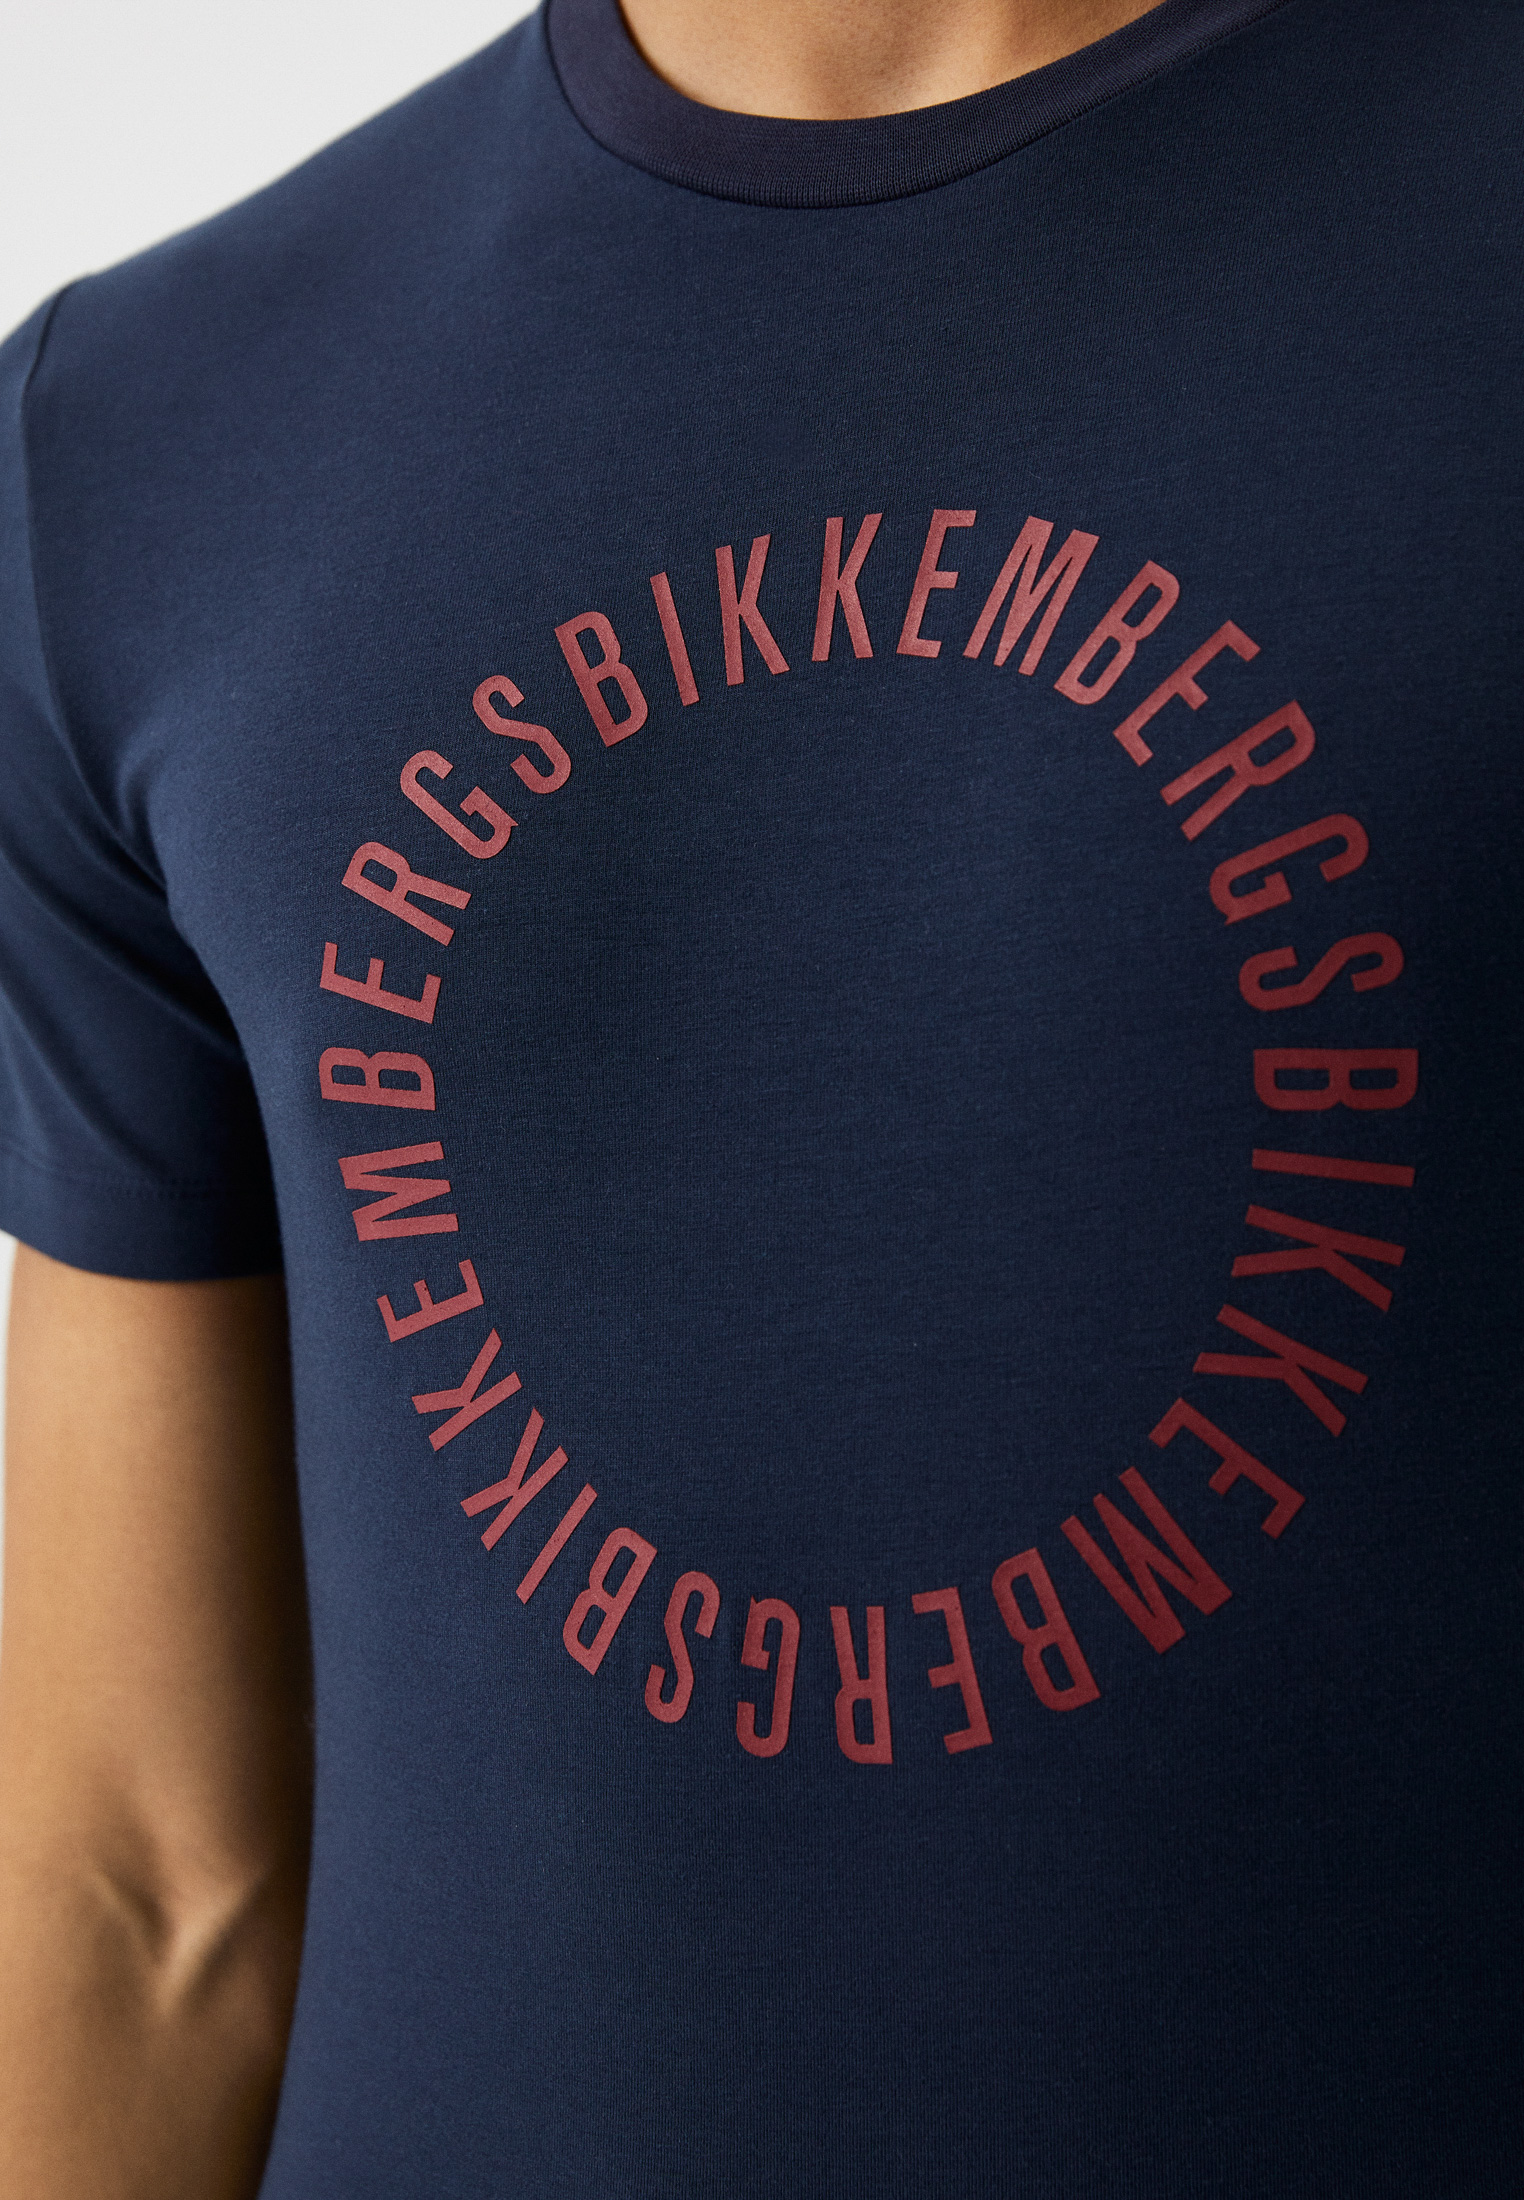 Мужская футболка Bikkembergs (Биккембергс) C 4 106 06 E 1811: изображение 4